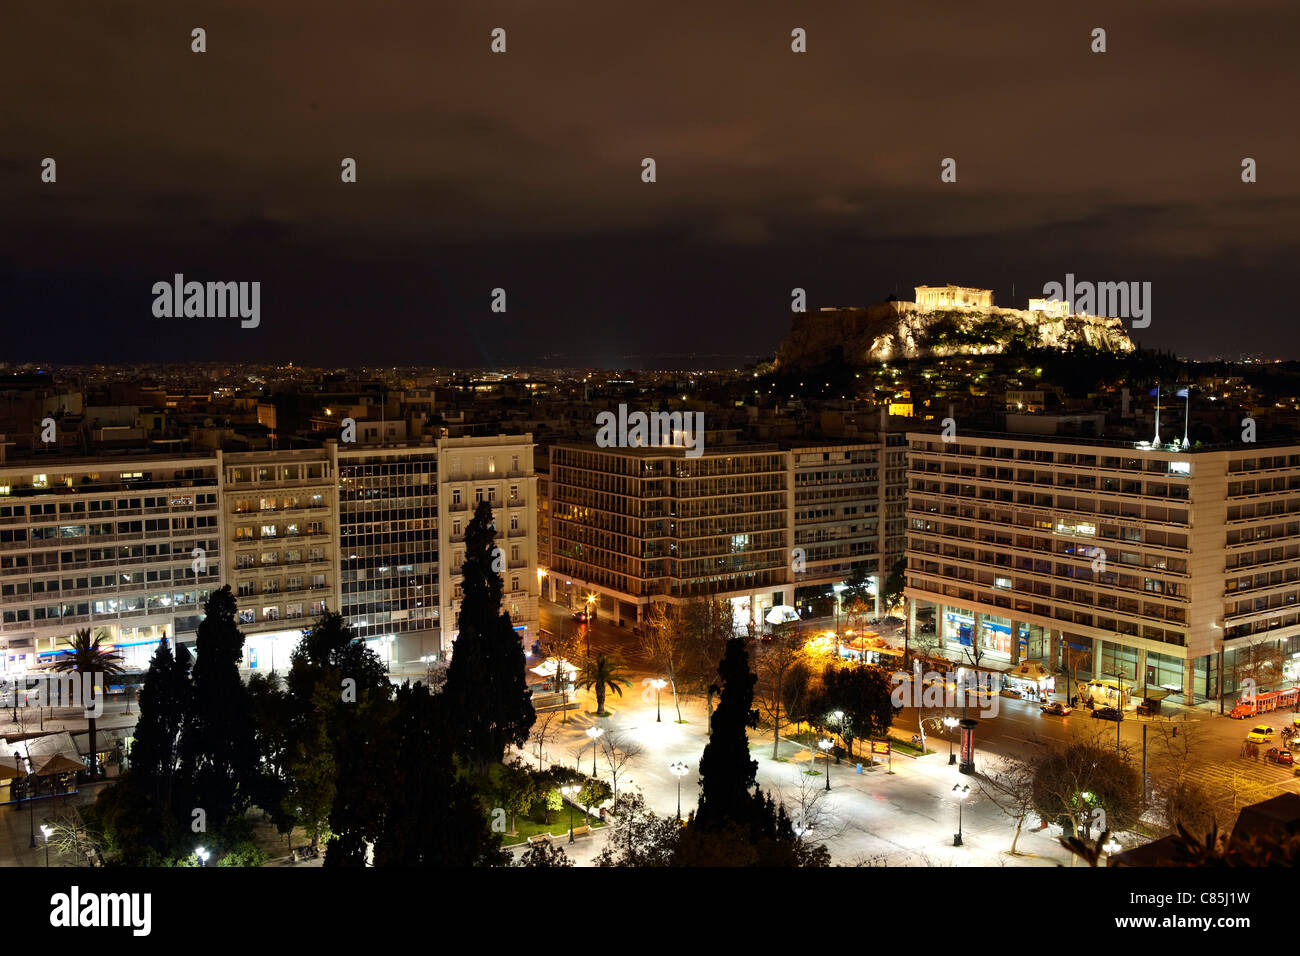 Acropolis at night, Athens, Greece Stock Photo